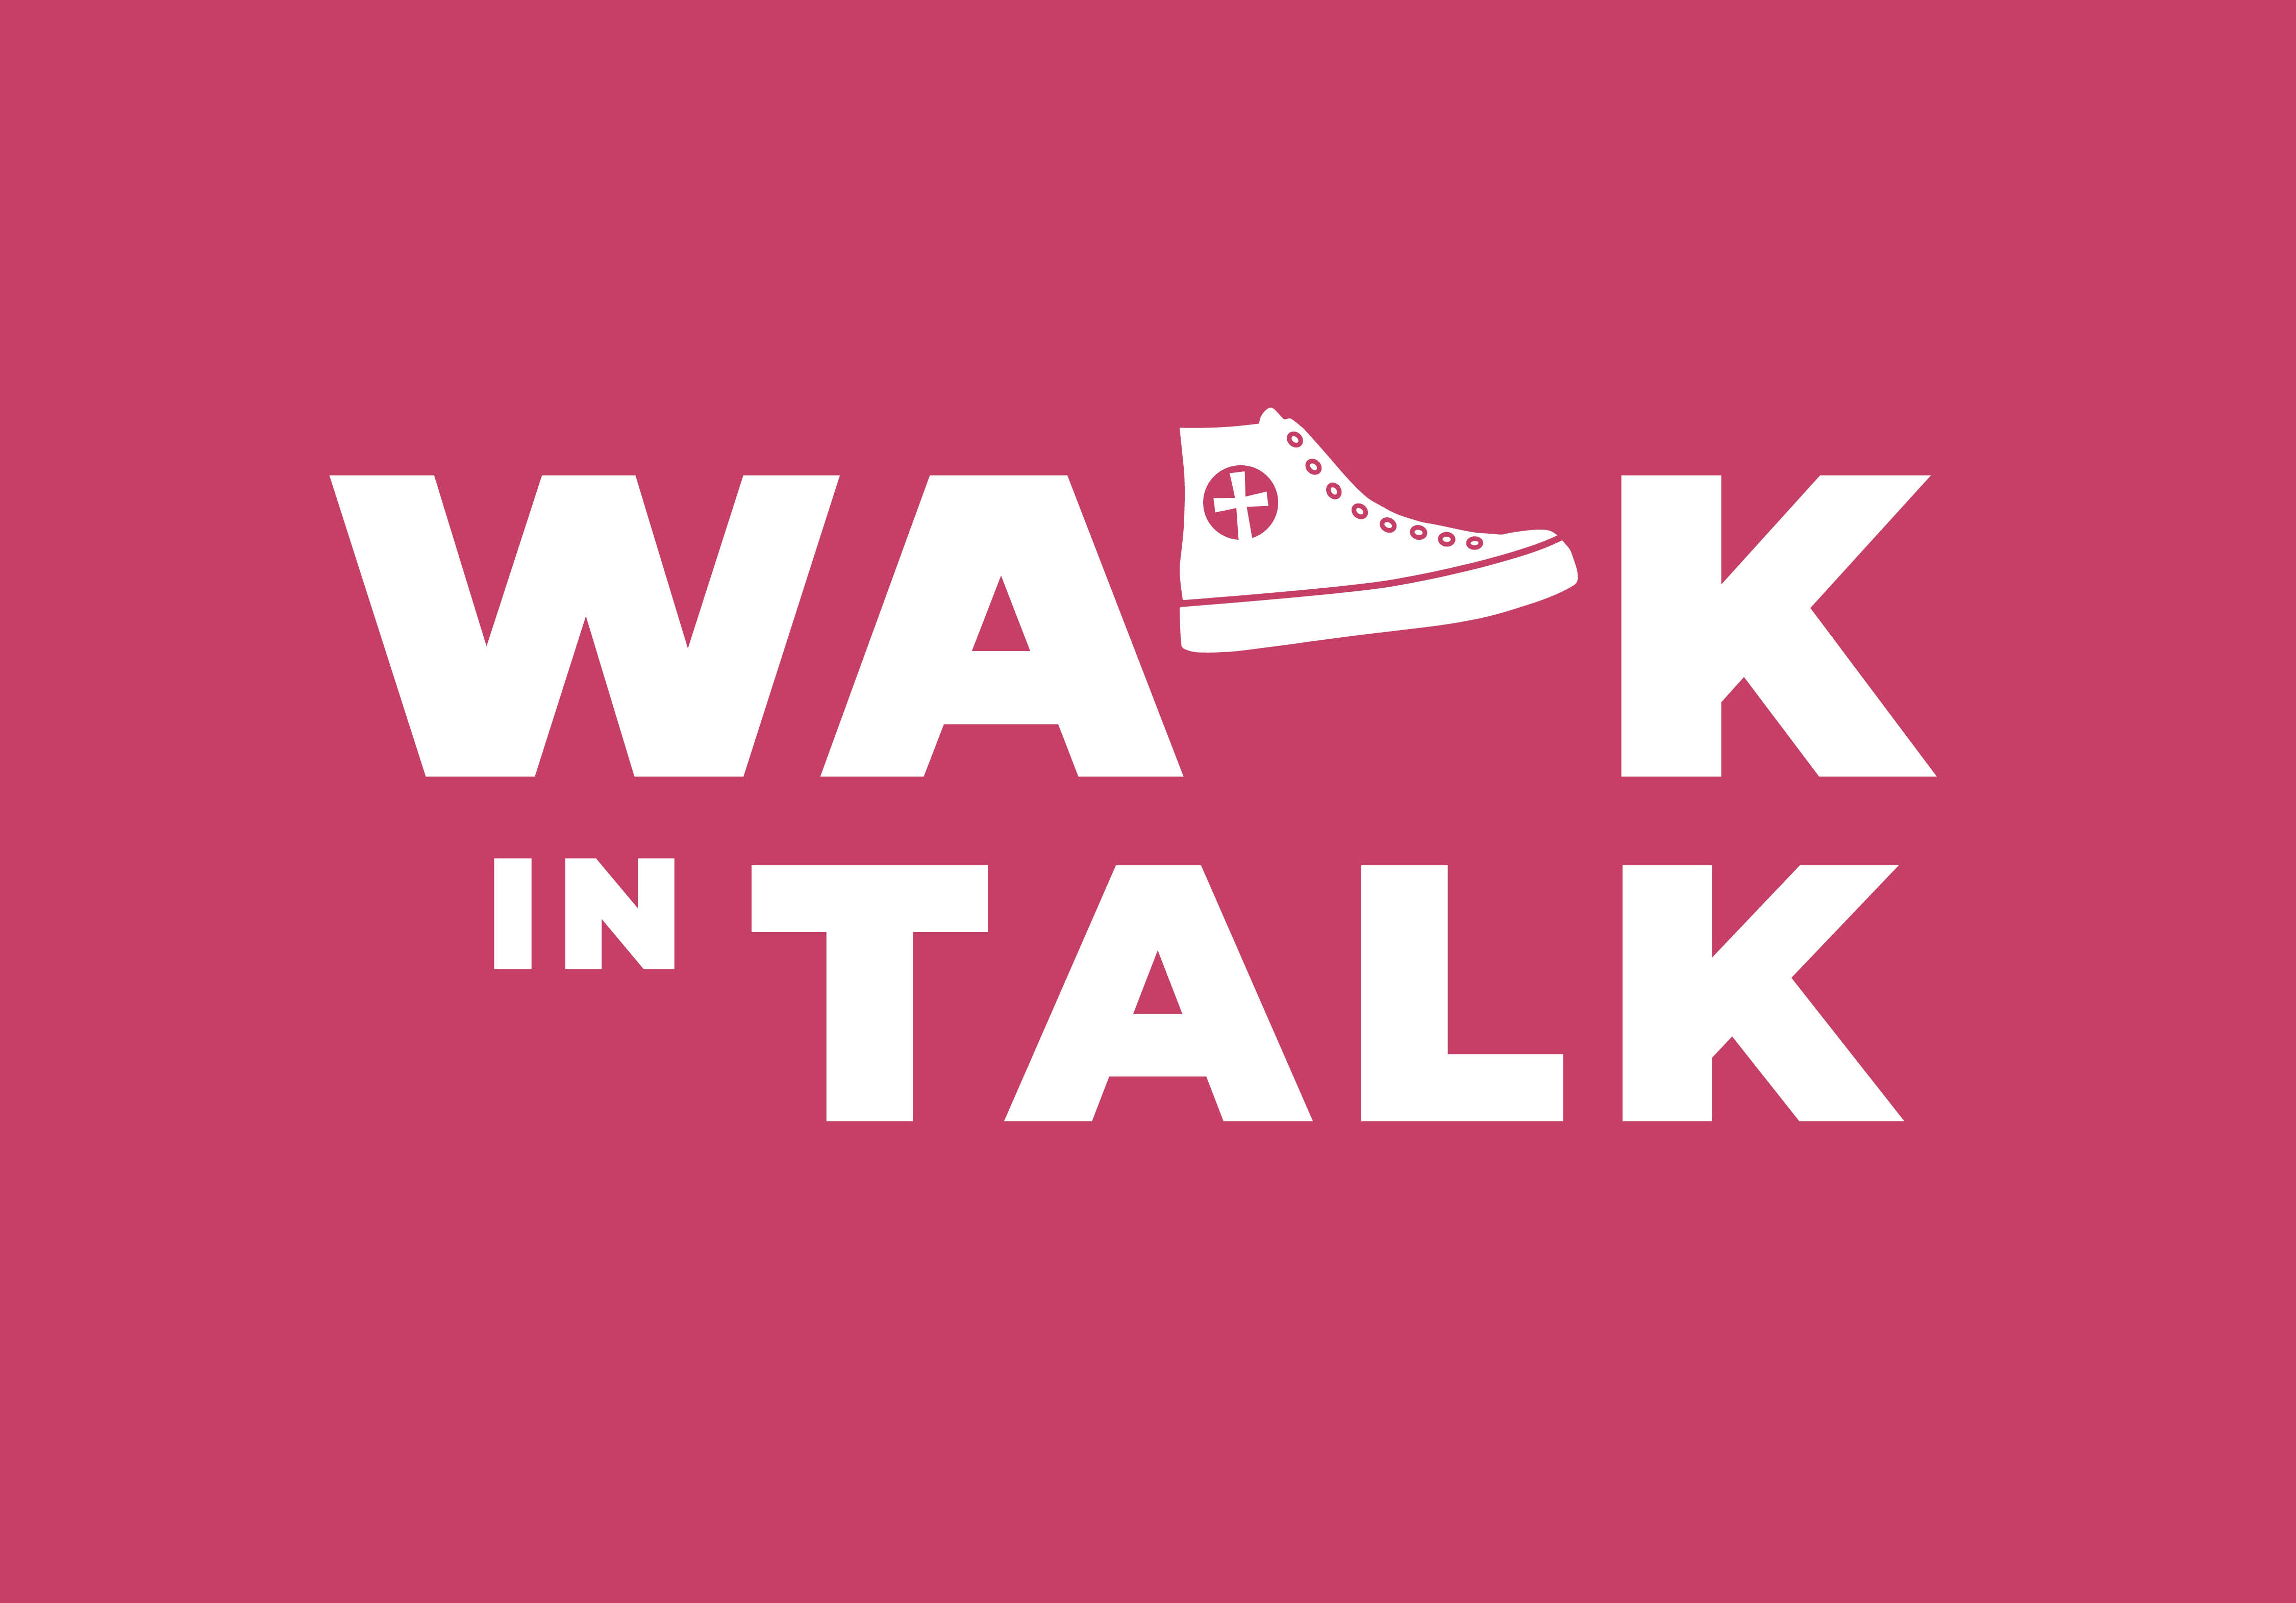 Punaisella pohjalla valkoinen teksti: Walk in talk. Walk in talk -toiminnan tunnus.